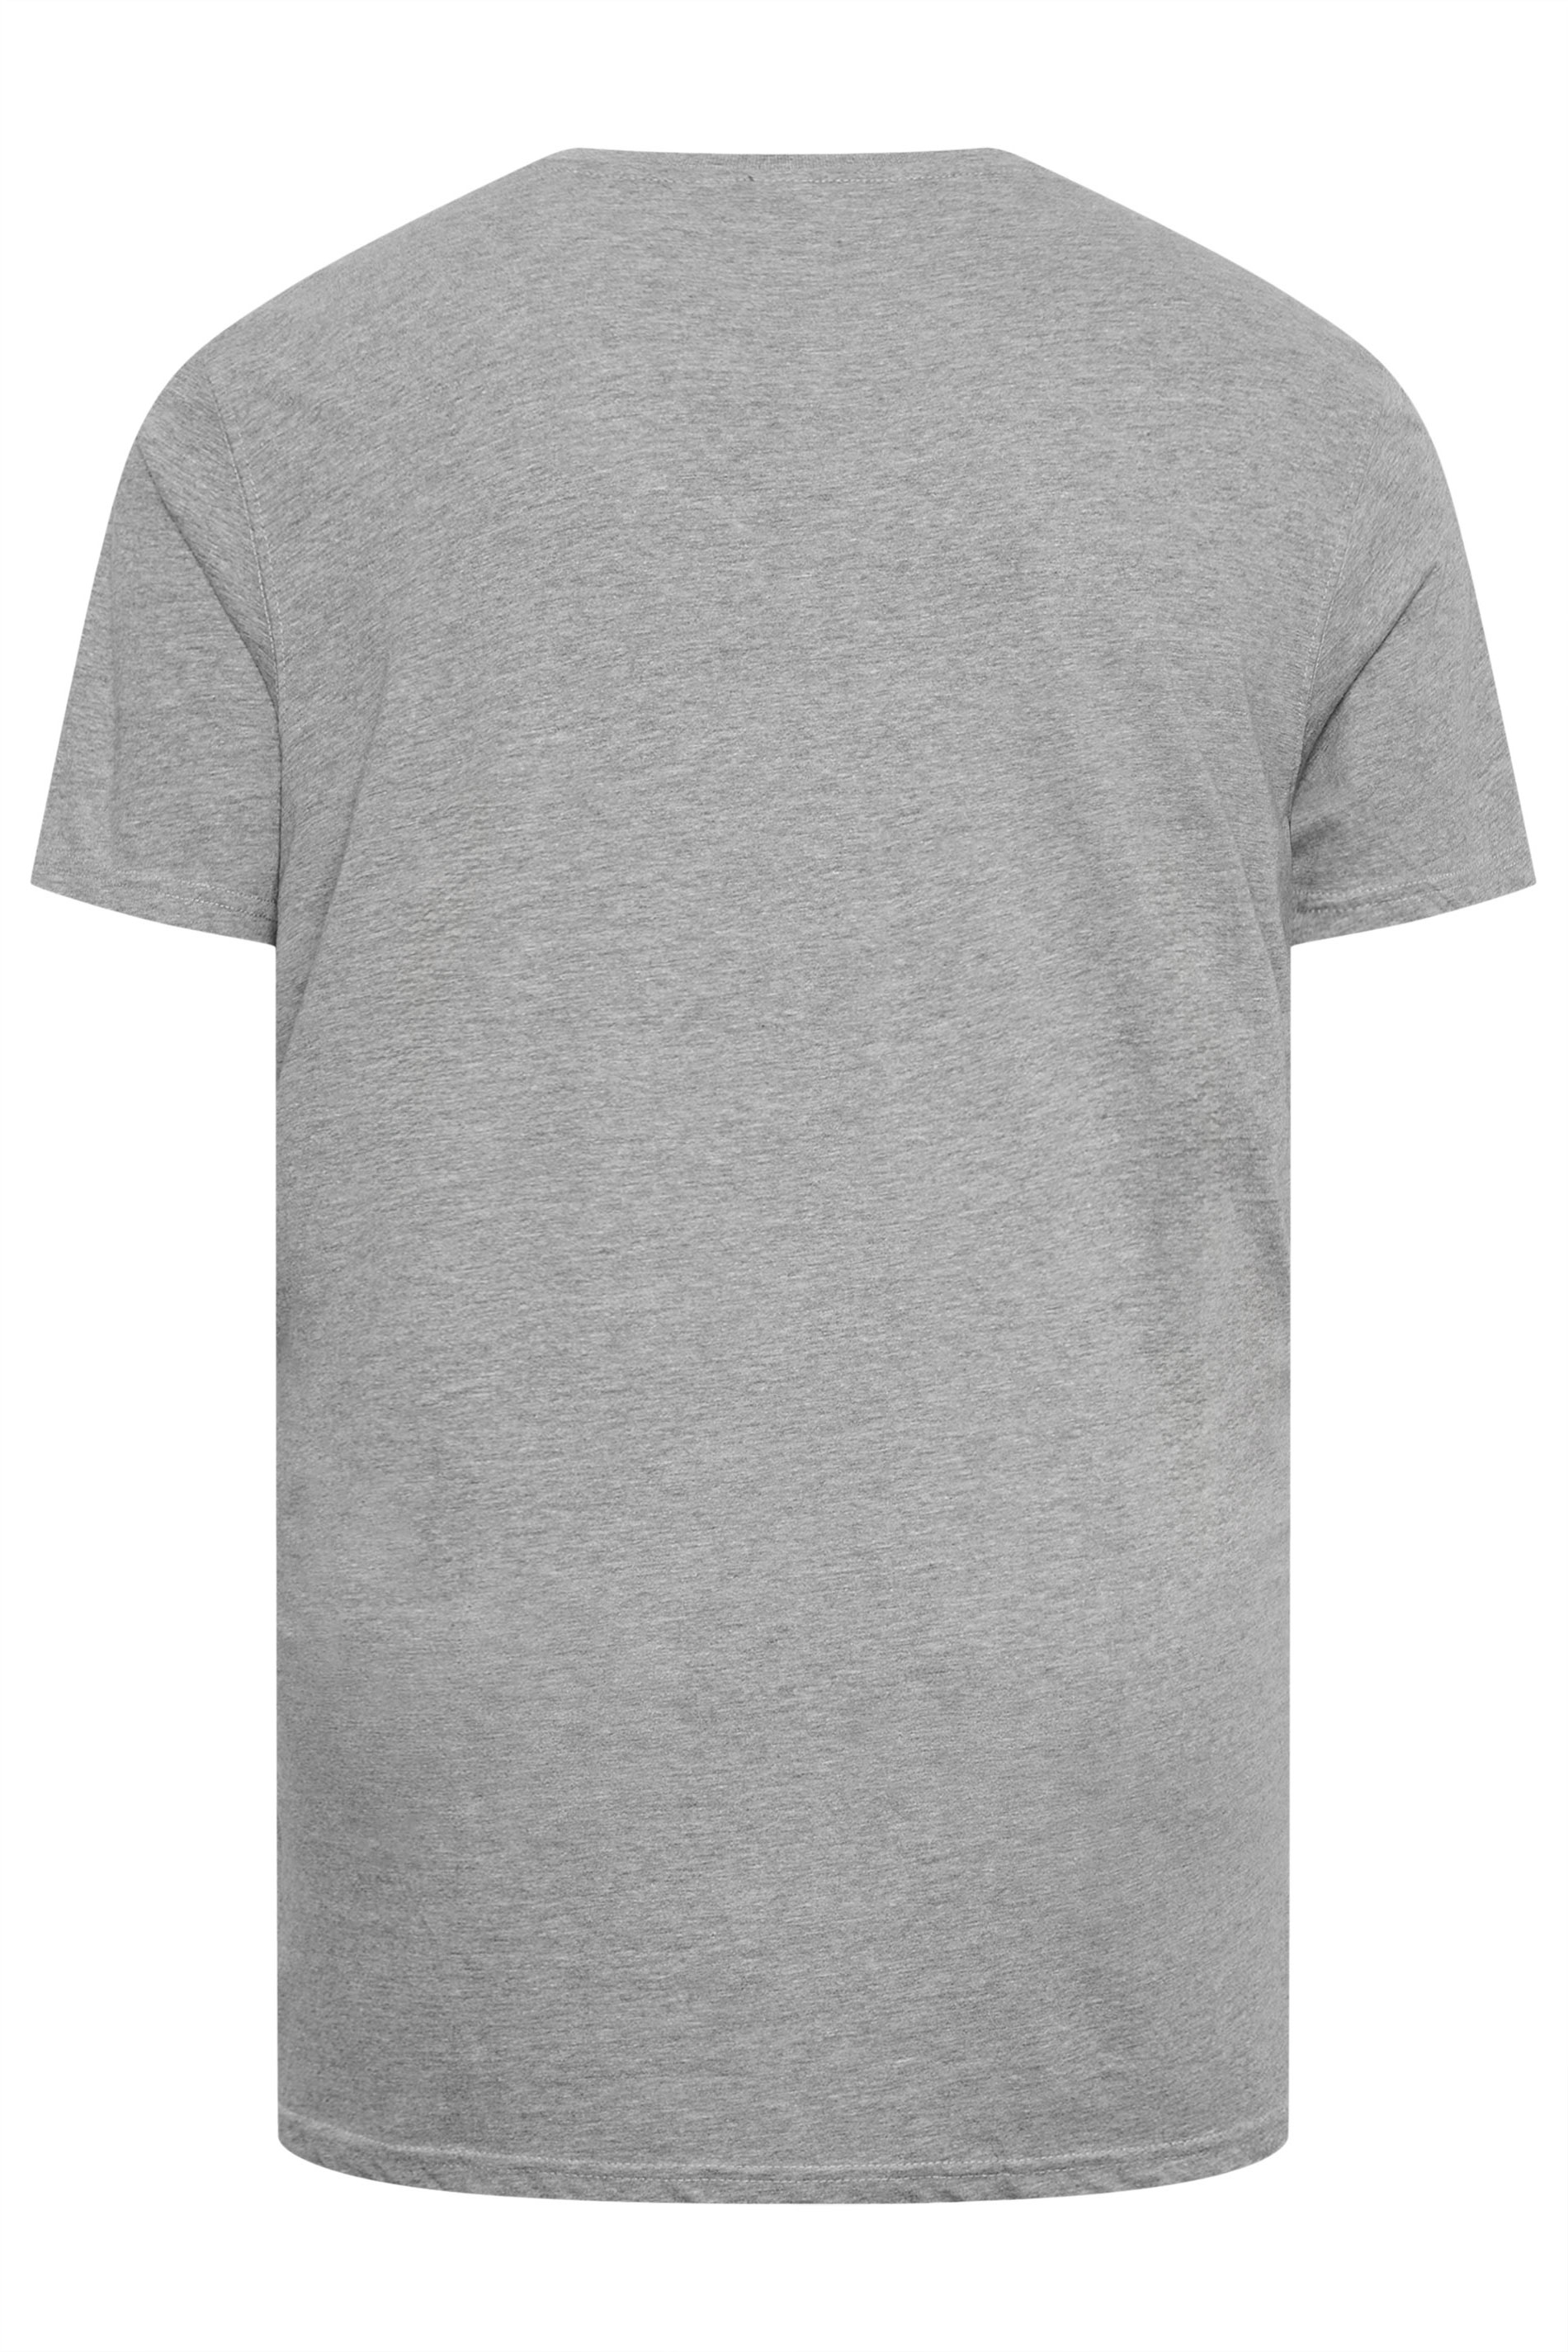 D555 Big & Tall Grey Premium V-Neck Combed Cotton T-Shirt | D555 2